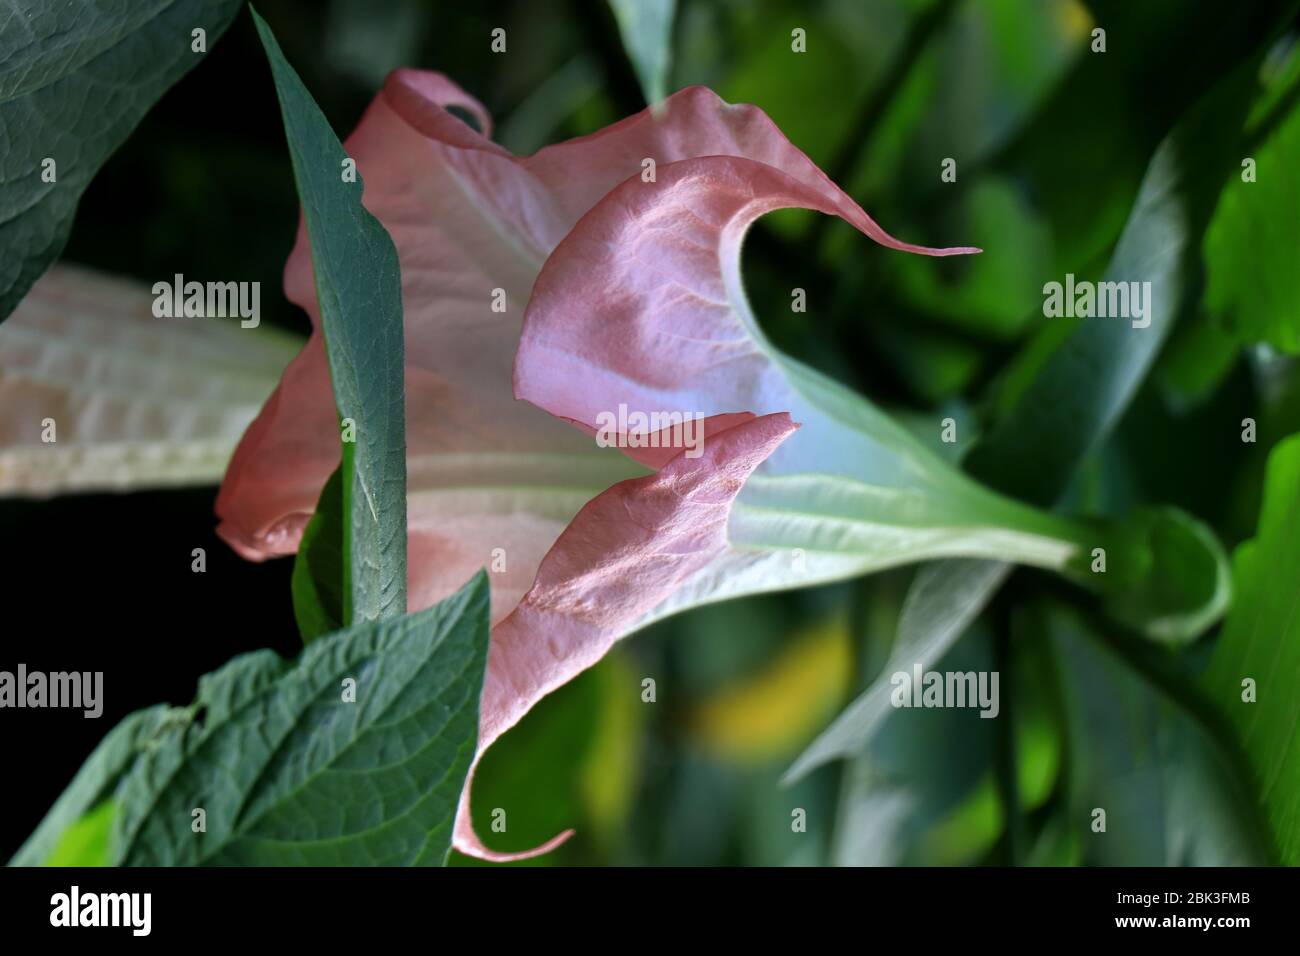 Brugmansia versicolor ist eine Pflanzenart aus der Familie der Solanaceae, die auch als „Engelstrompeten“ bekannt ist. Brugmansia Suaveolens. Stockfoto